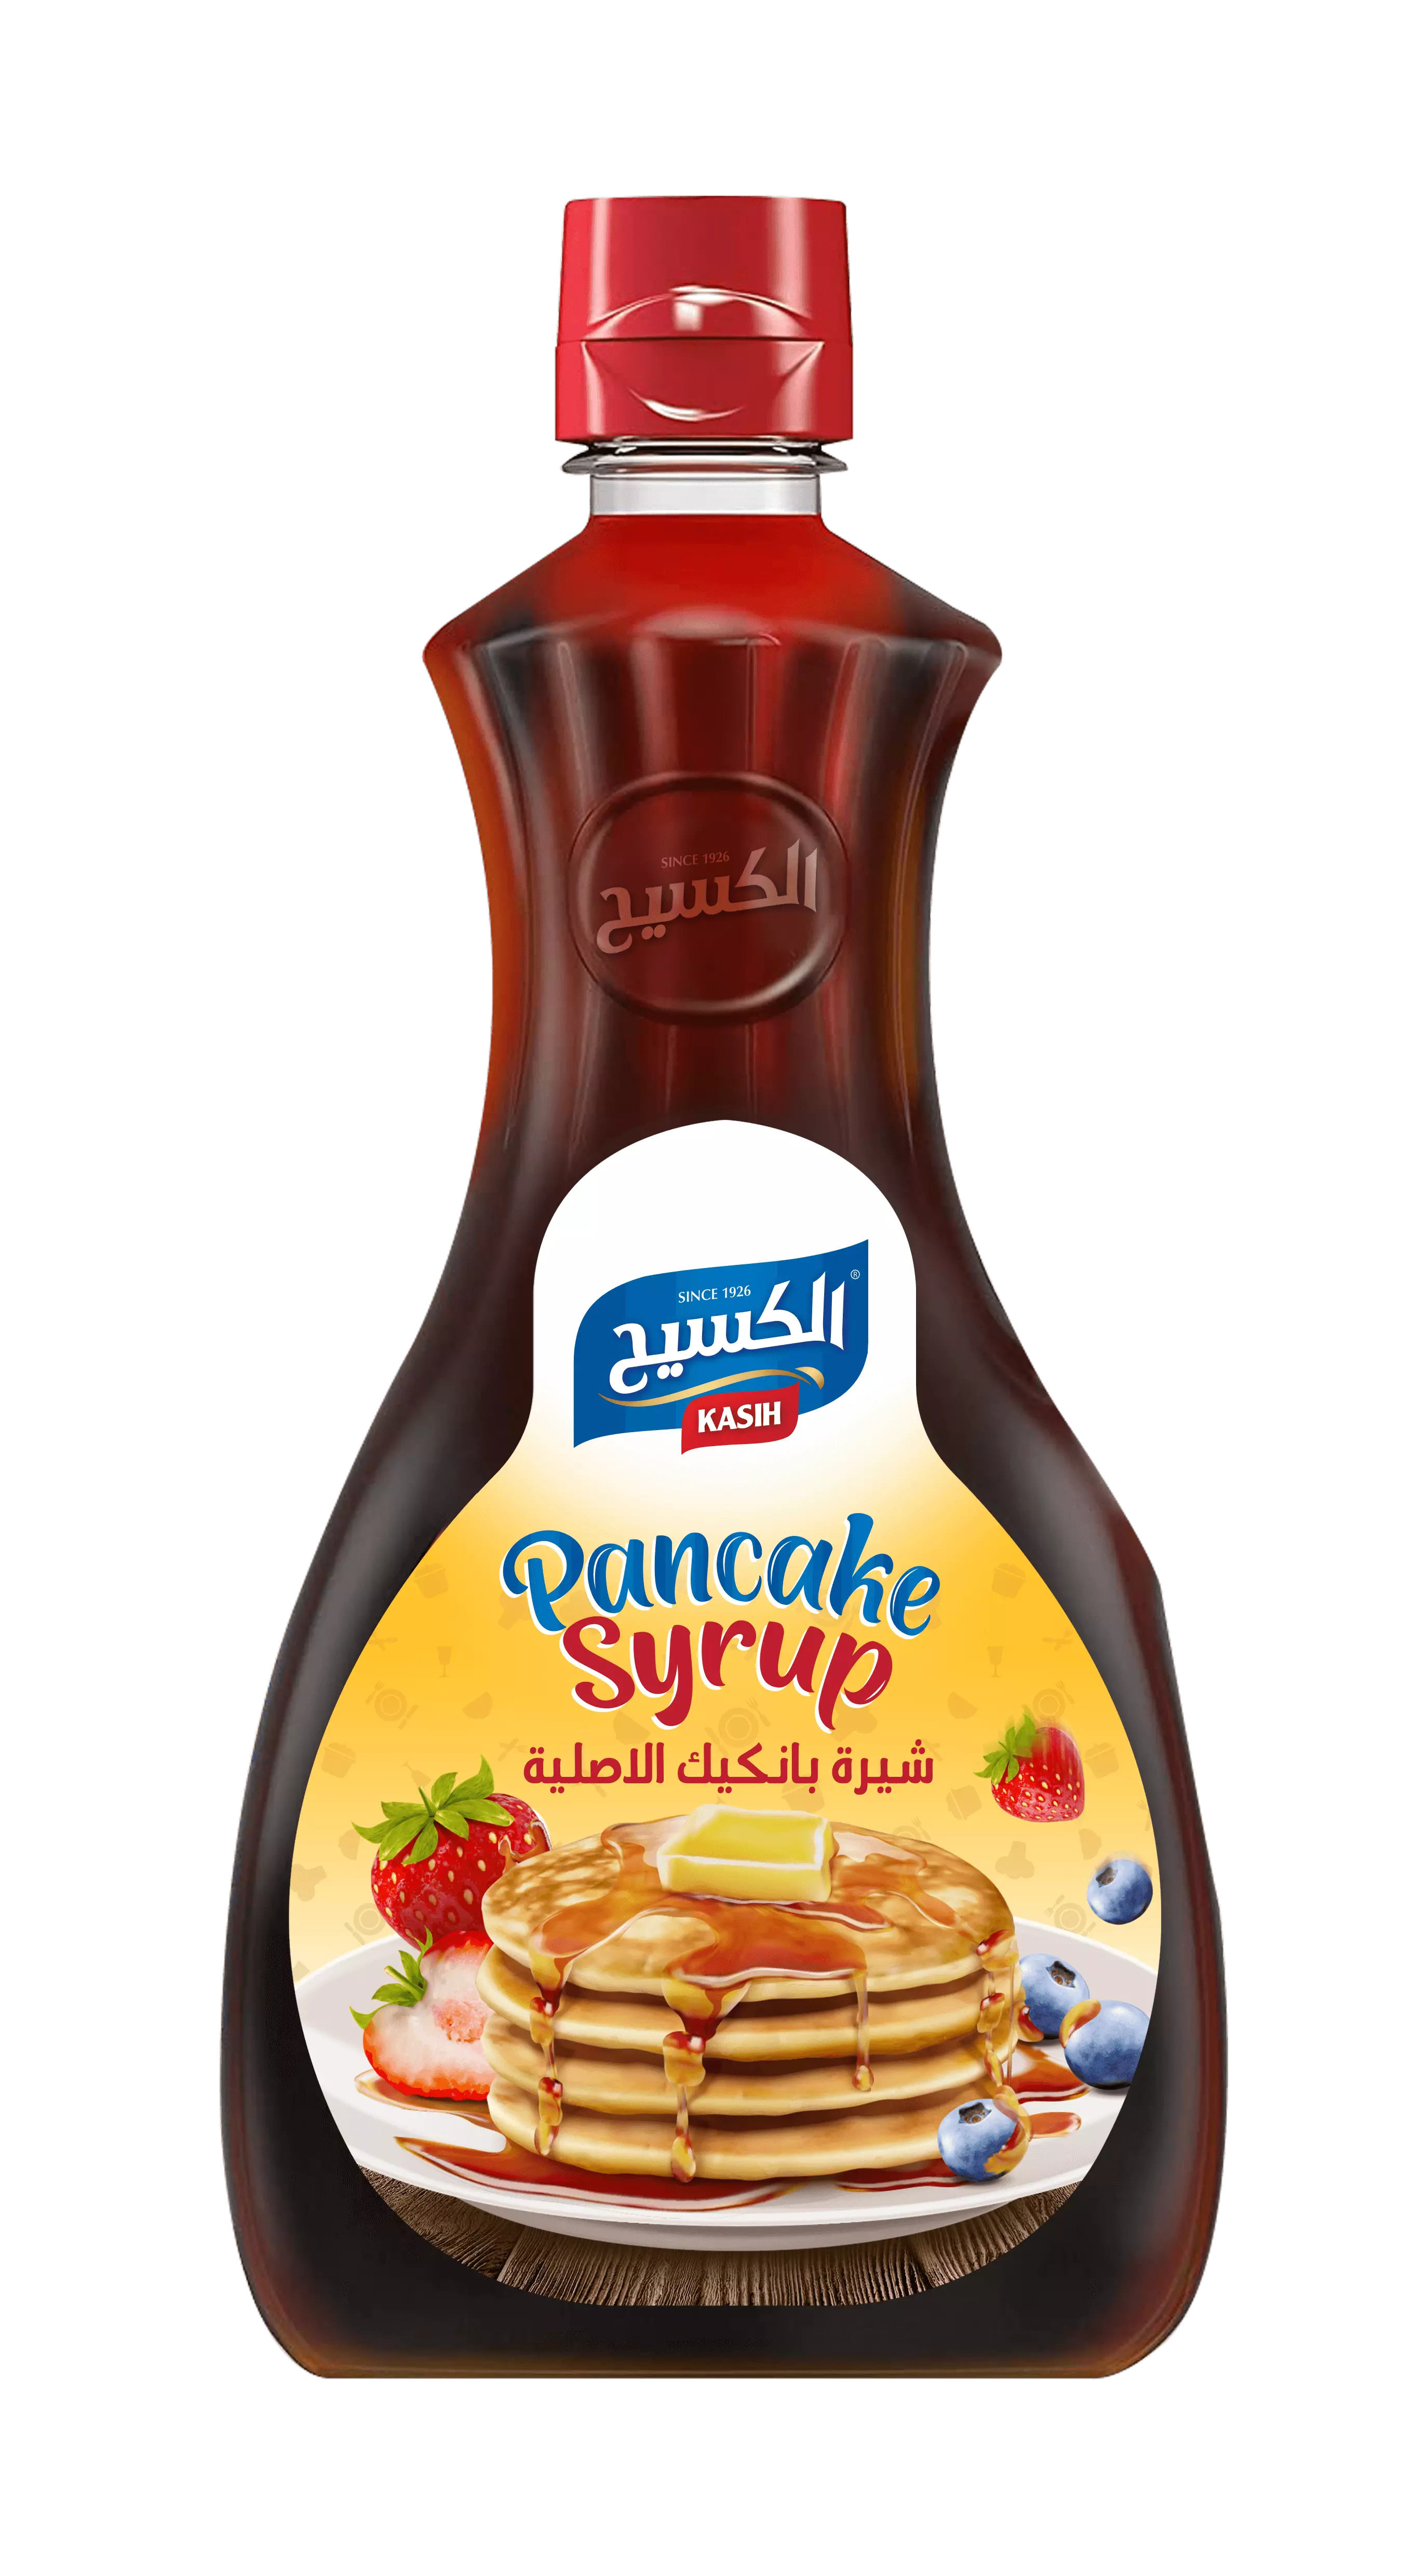 Kasih_Pancake_syrup